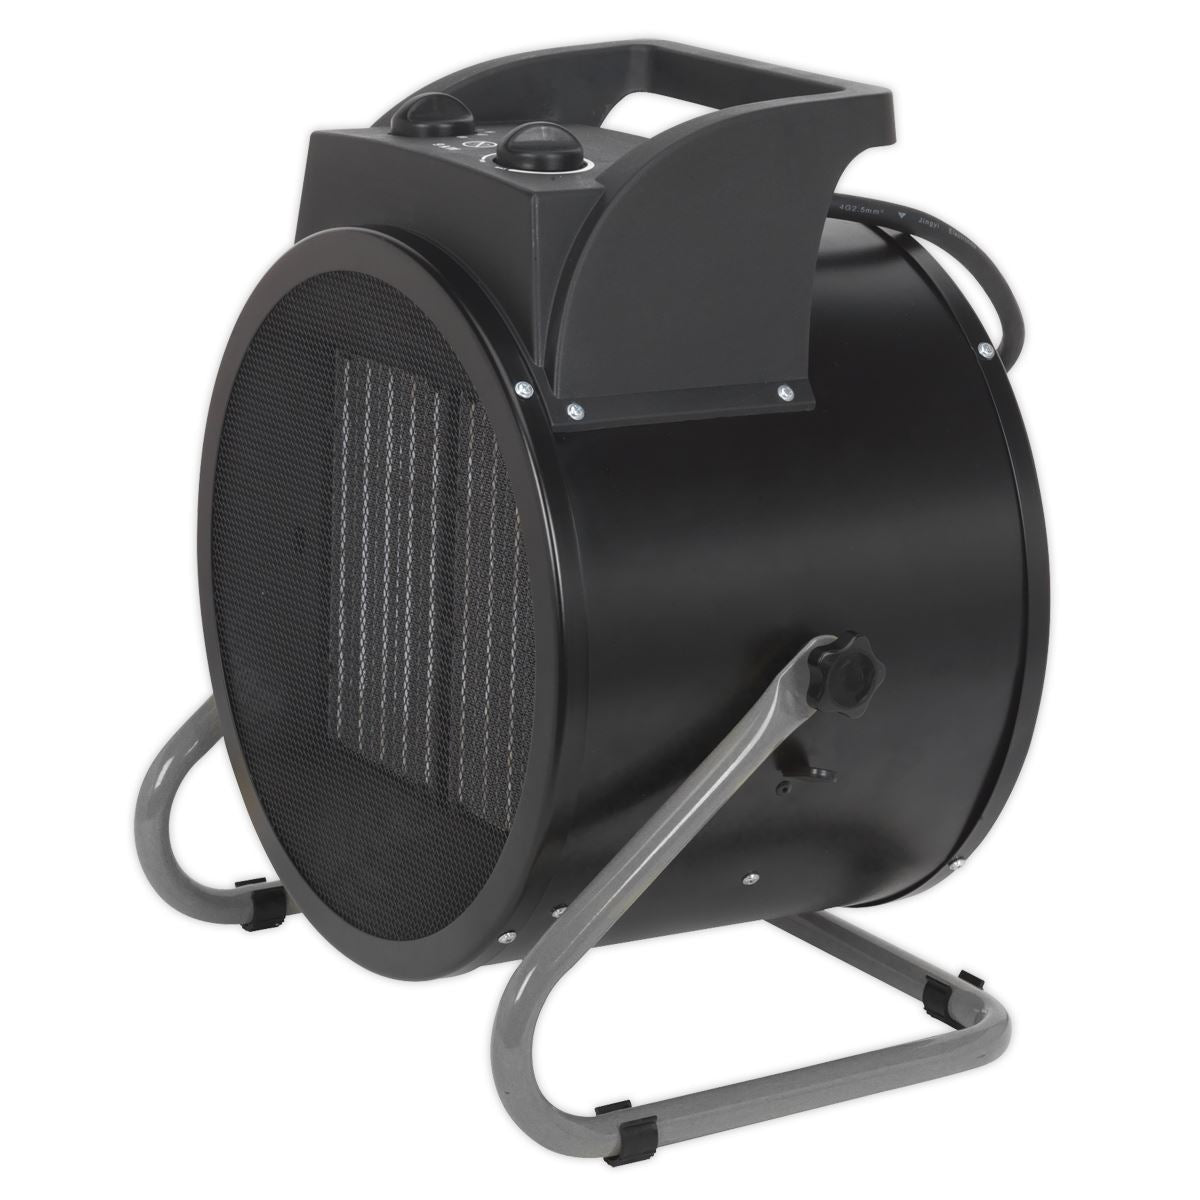 Sealey Industrial PTC Fan Heater 9000W 415V 3ph